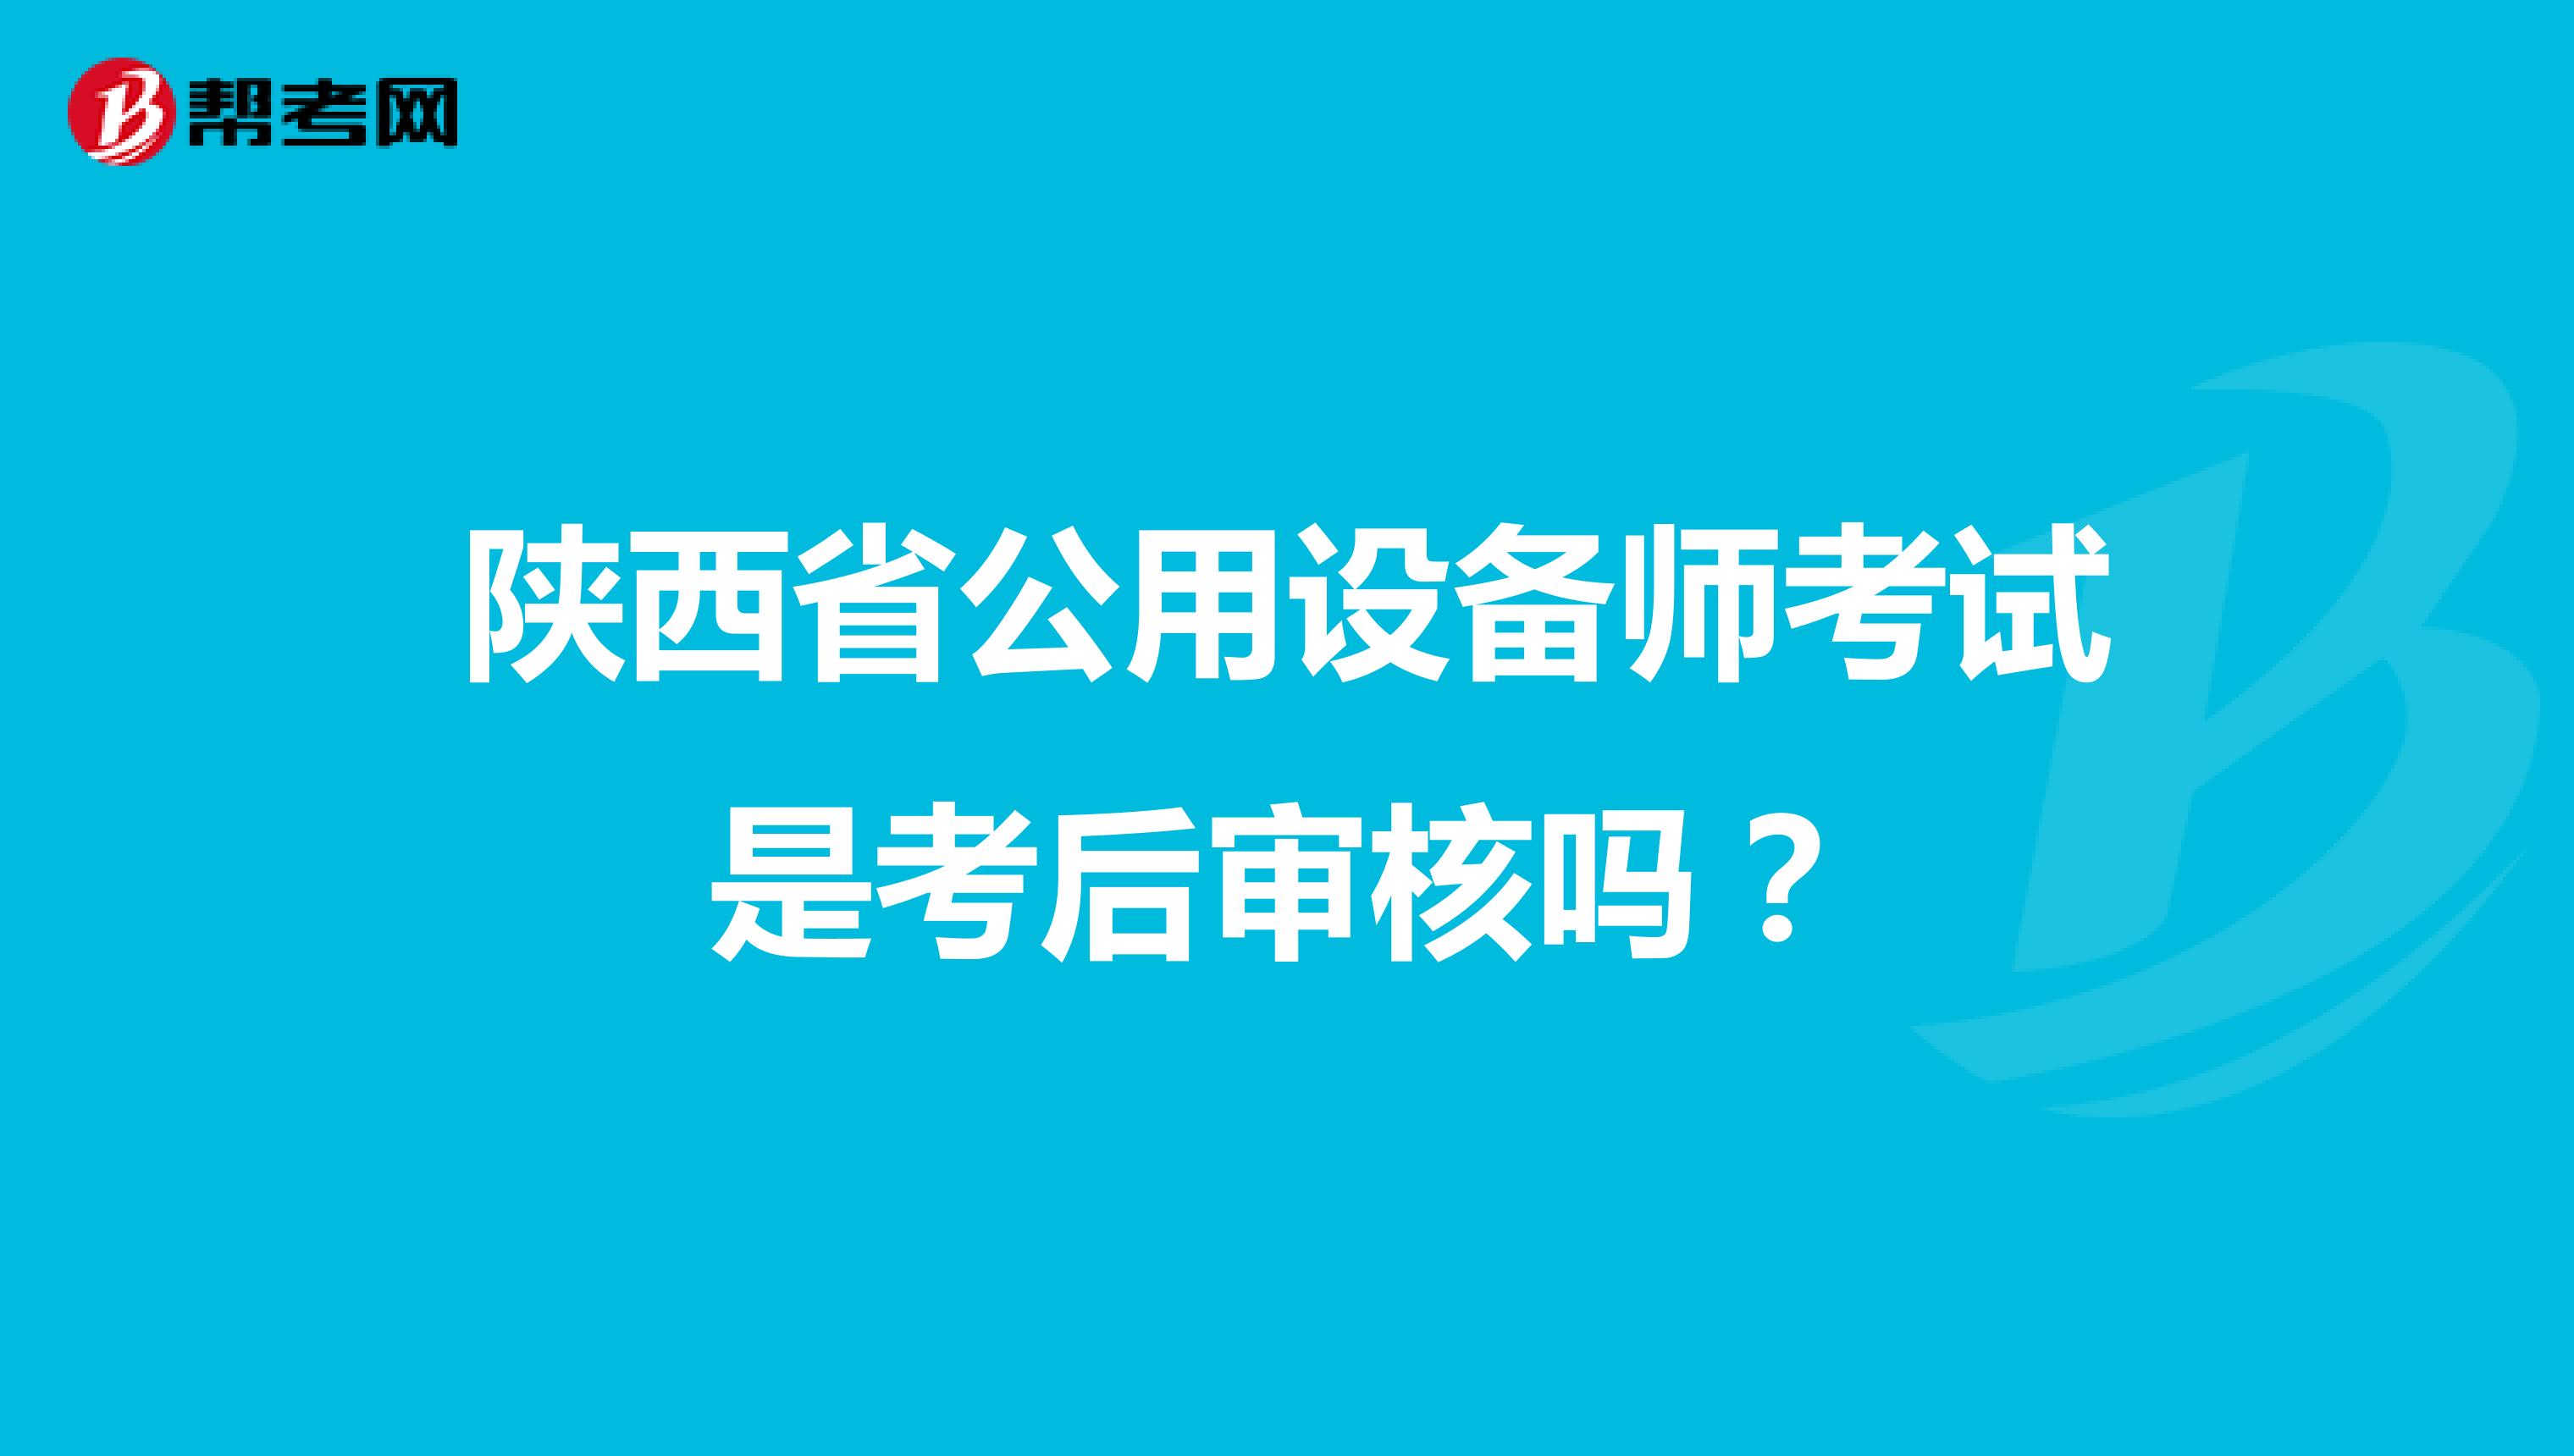 陕西省公用设备师考试是考后审核吗？